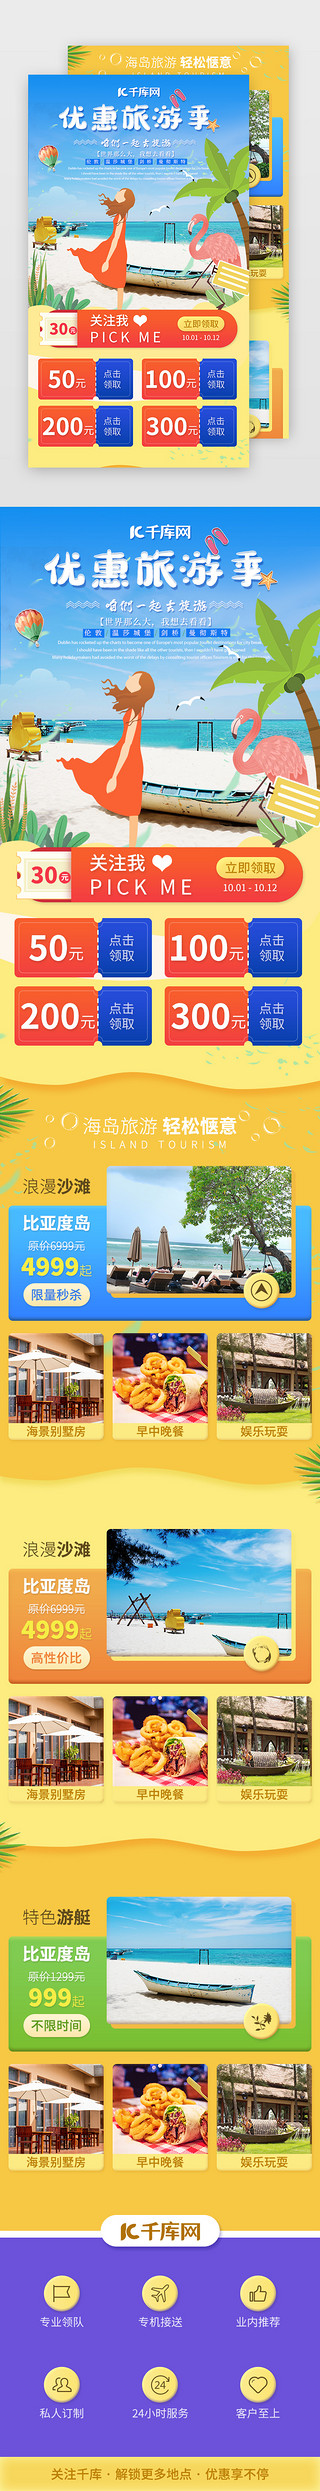 蓝色黄色海报UI设计素材_国庆旅游旅行景点介绍H5